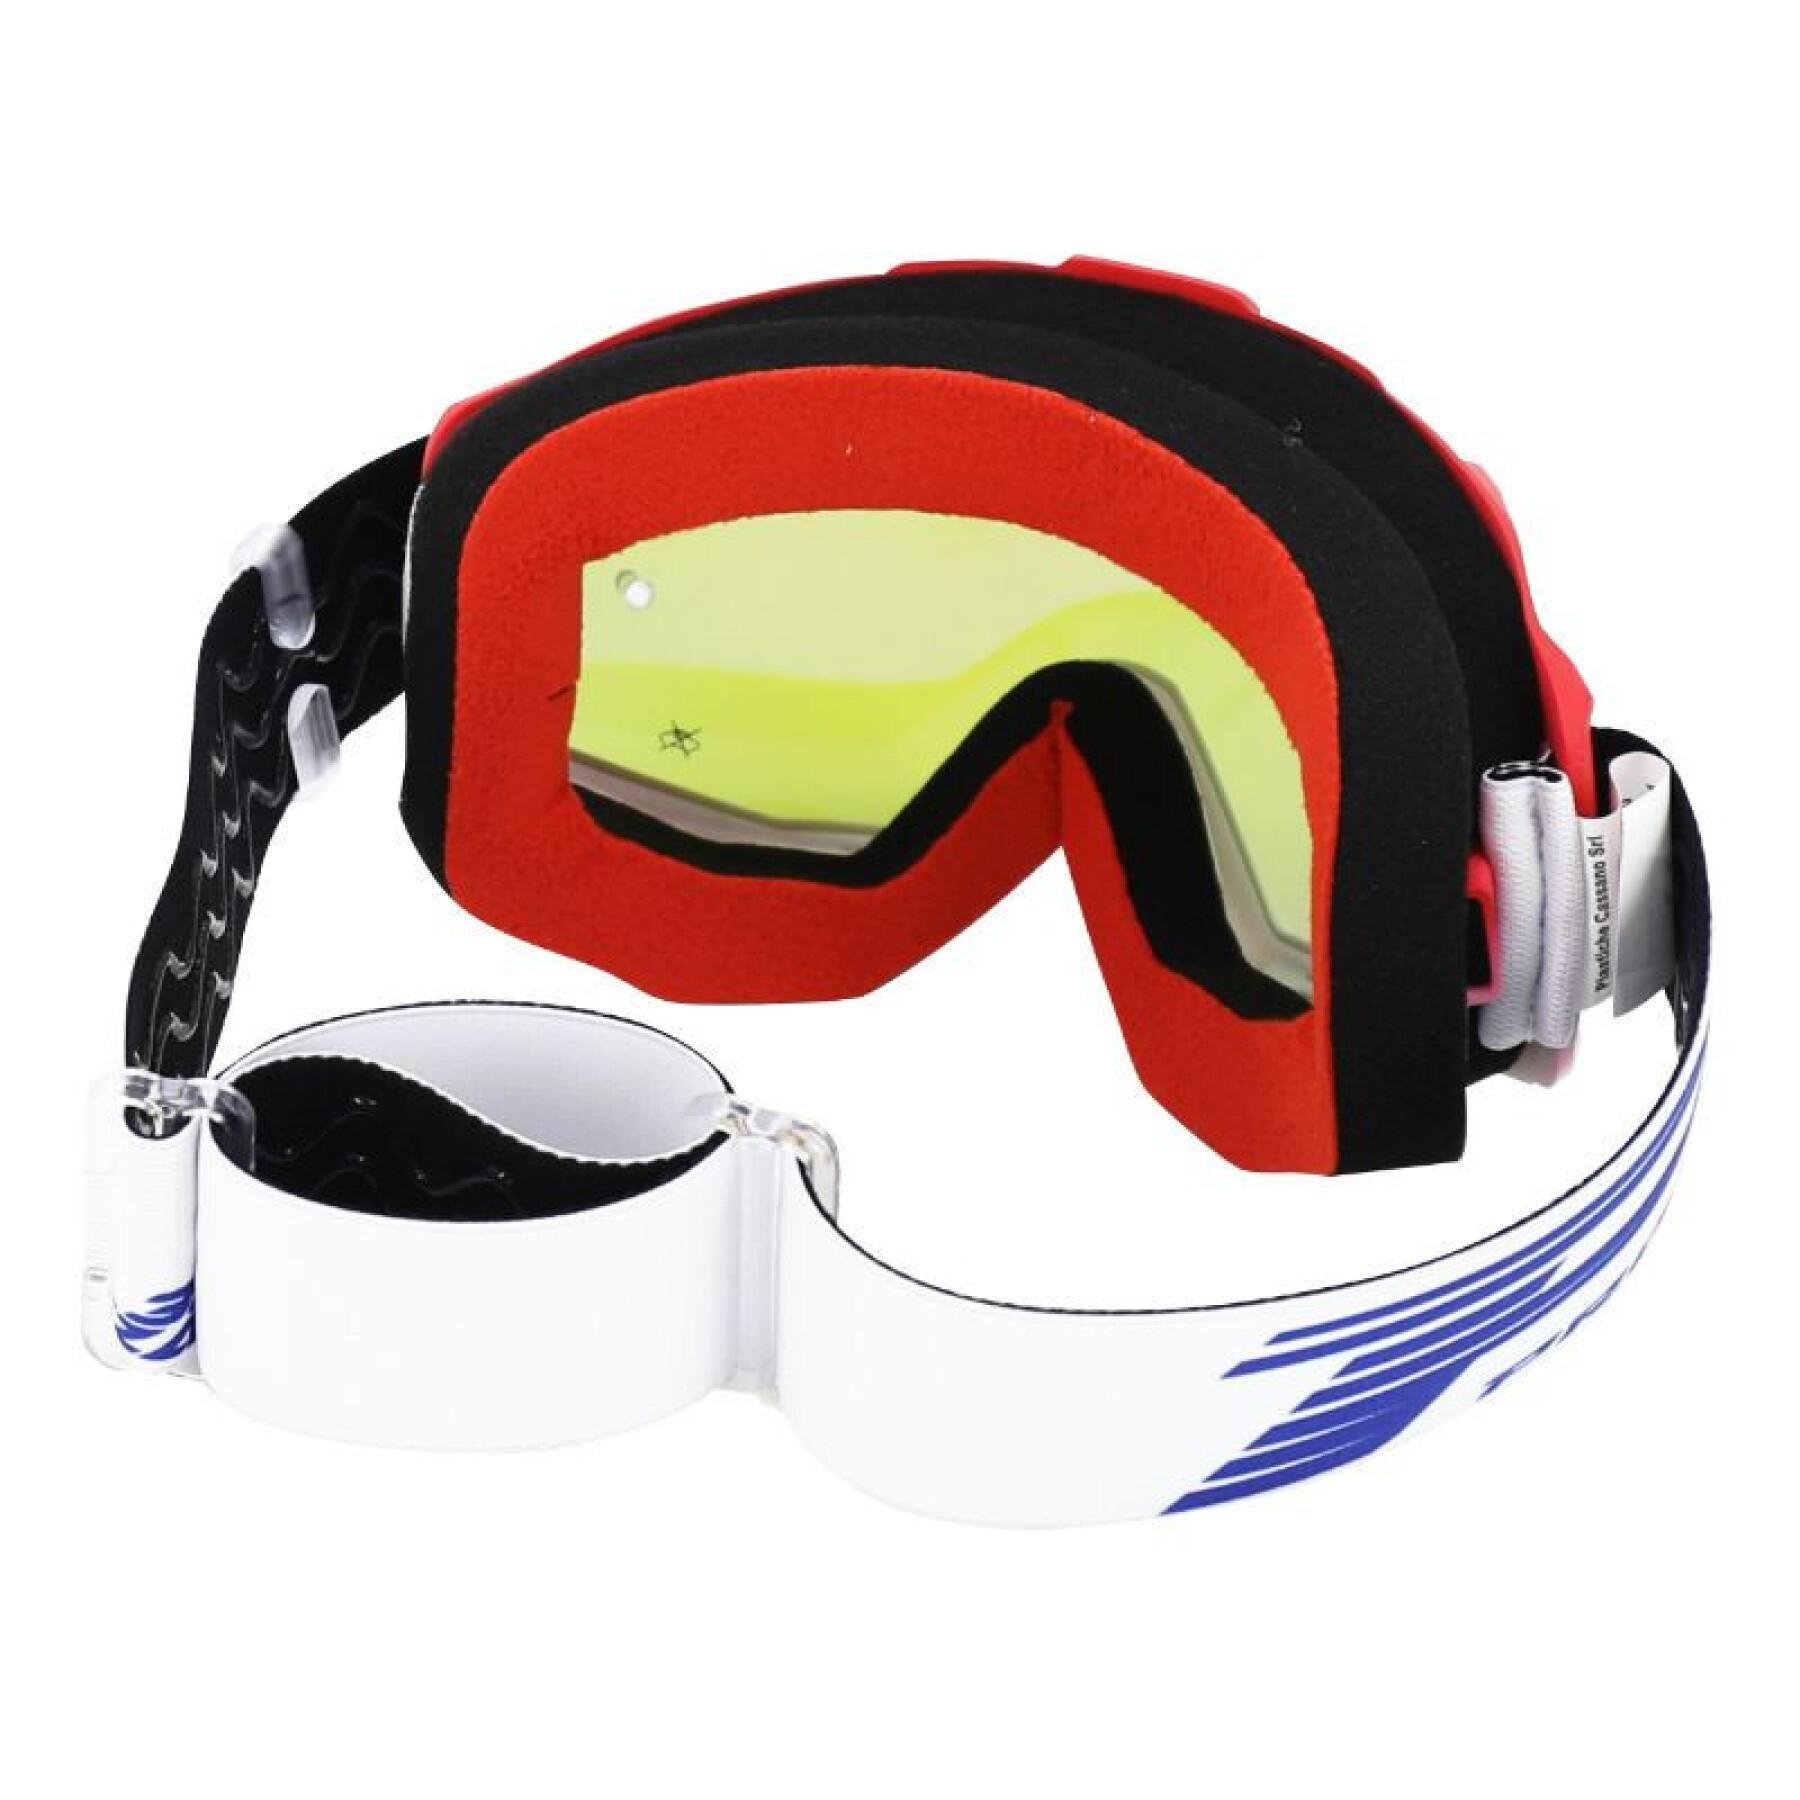 Motorrad-Cross-Maske mit Spiegelscheibe, kratzfest und UV-beständig, mit Brille kompatibel Progrip 3201 FL Atzaki